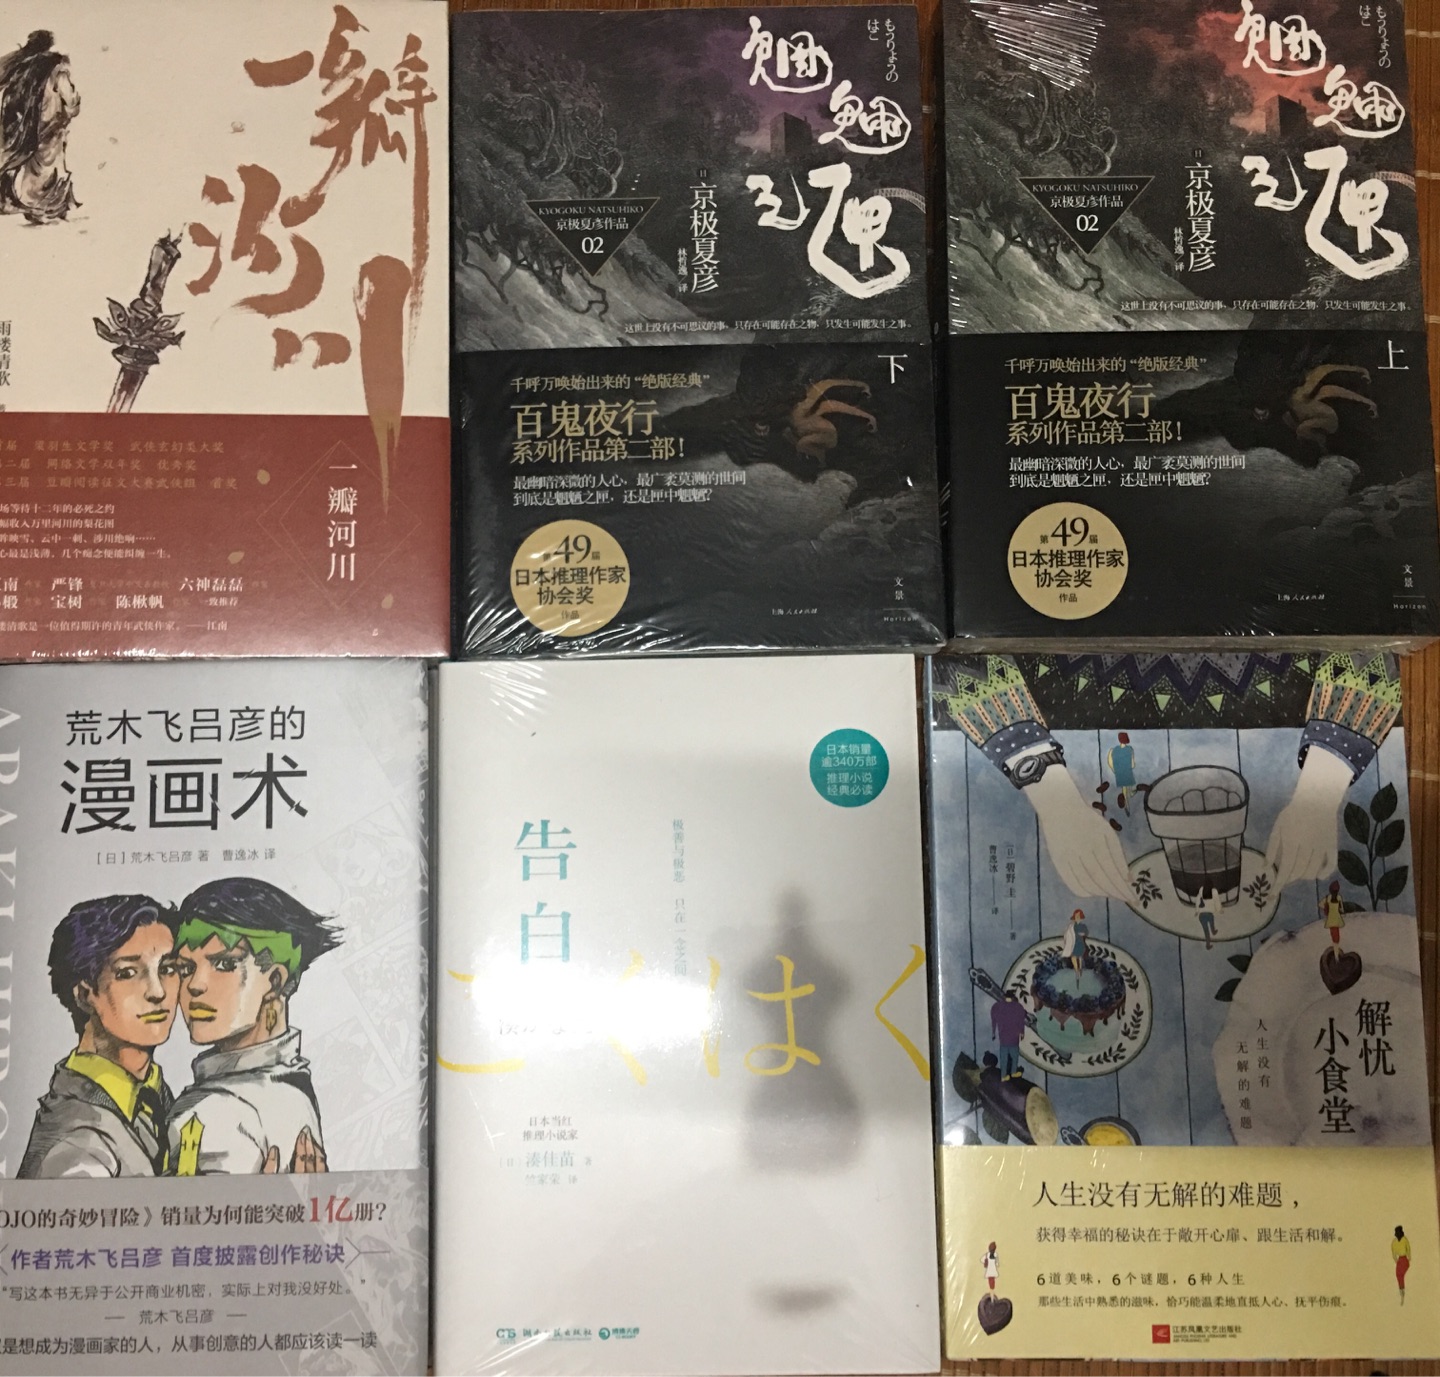 《魍魉之匣》京极夏彦的作品还没有读过，一次性买了好几册。